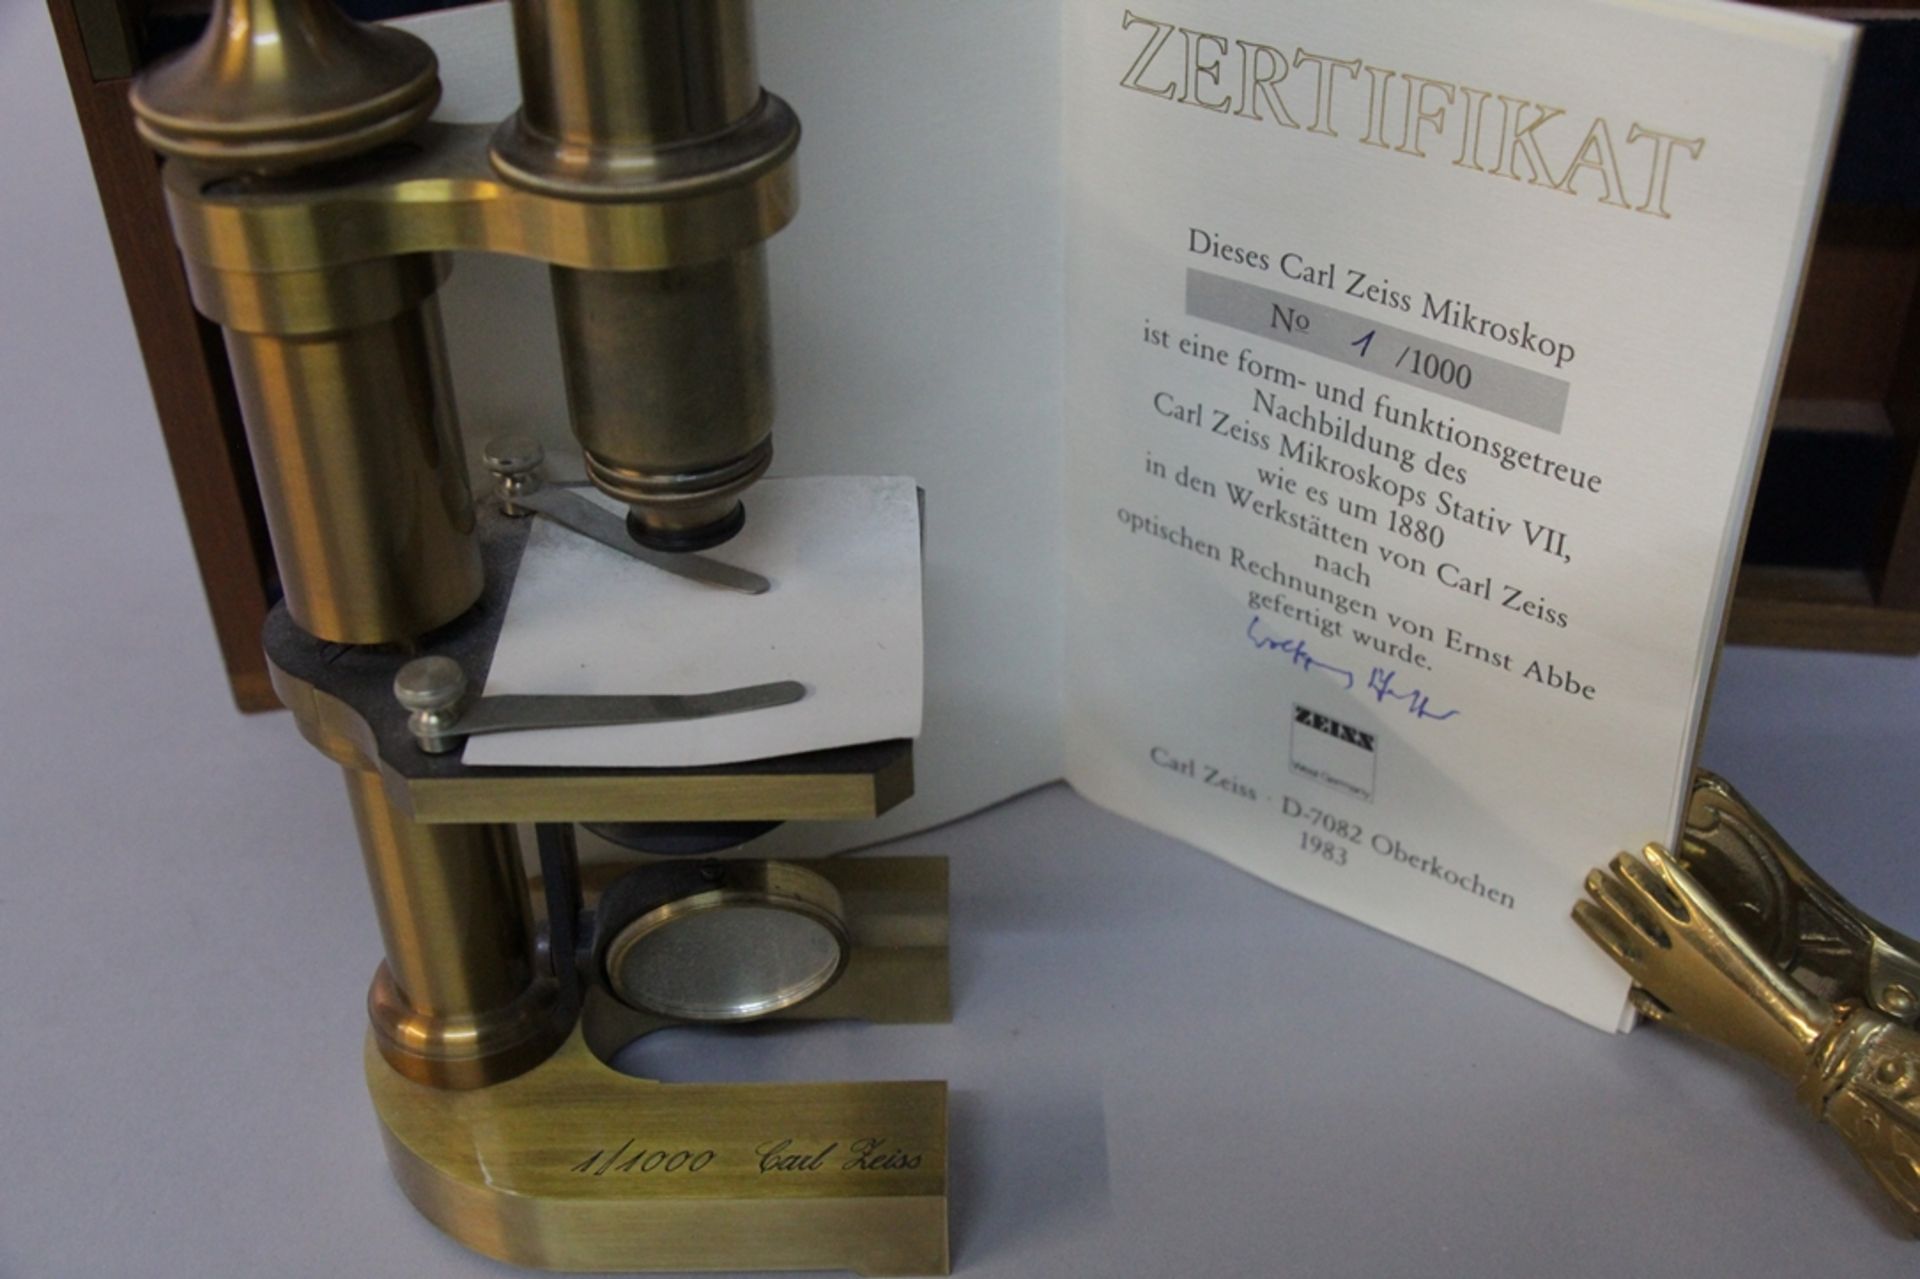 Carl Zeiss Mikroskop - Image 2 of 2